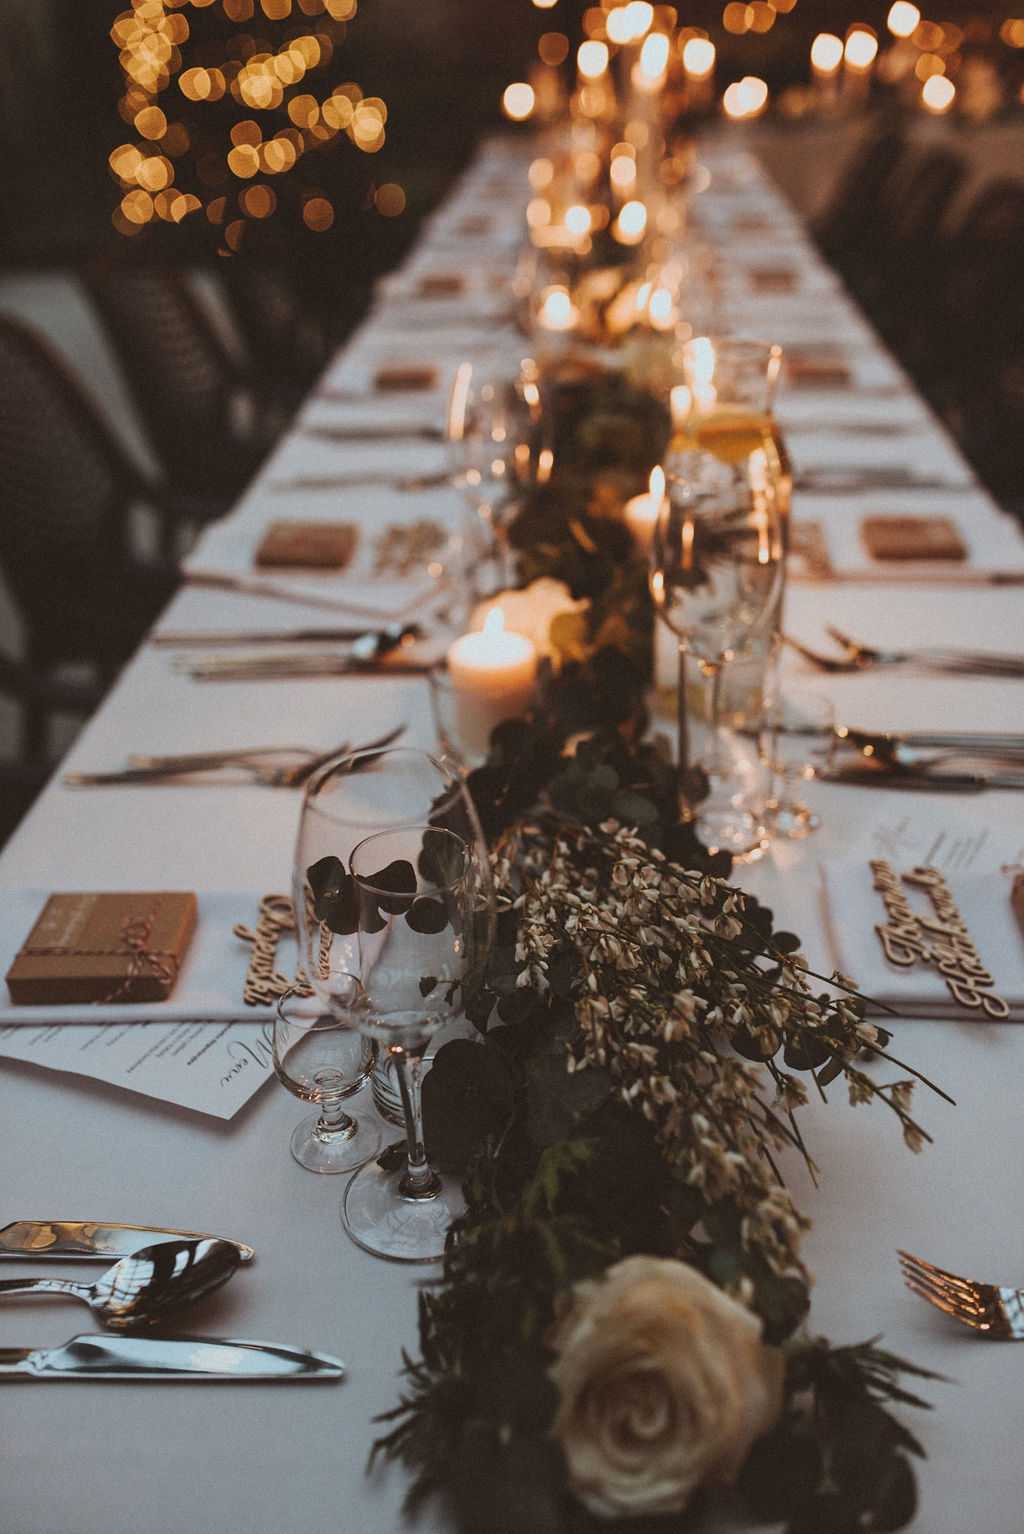 zielone girlandy i świece w dekoracji stołu na wesele